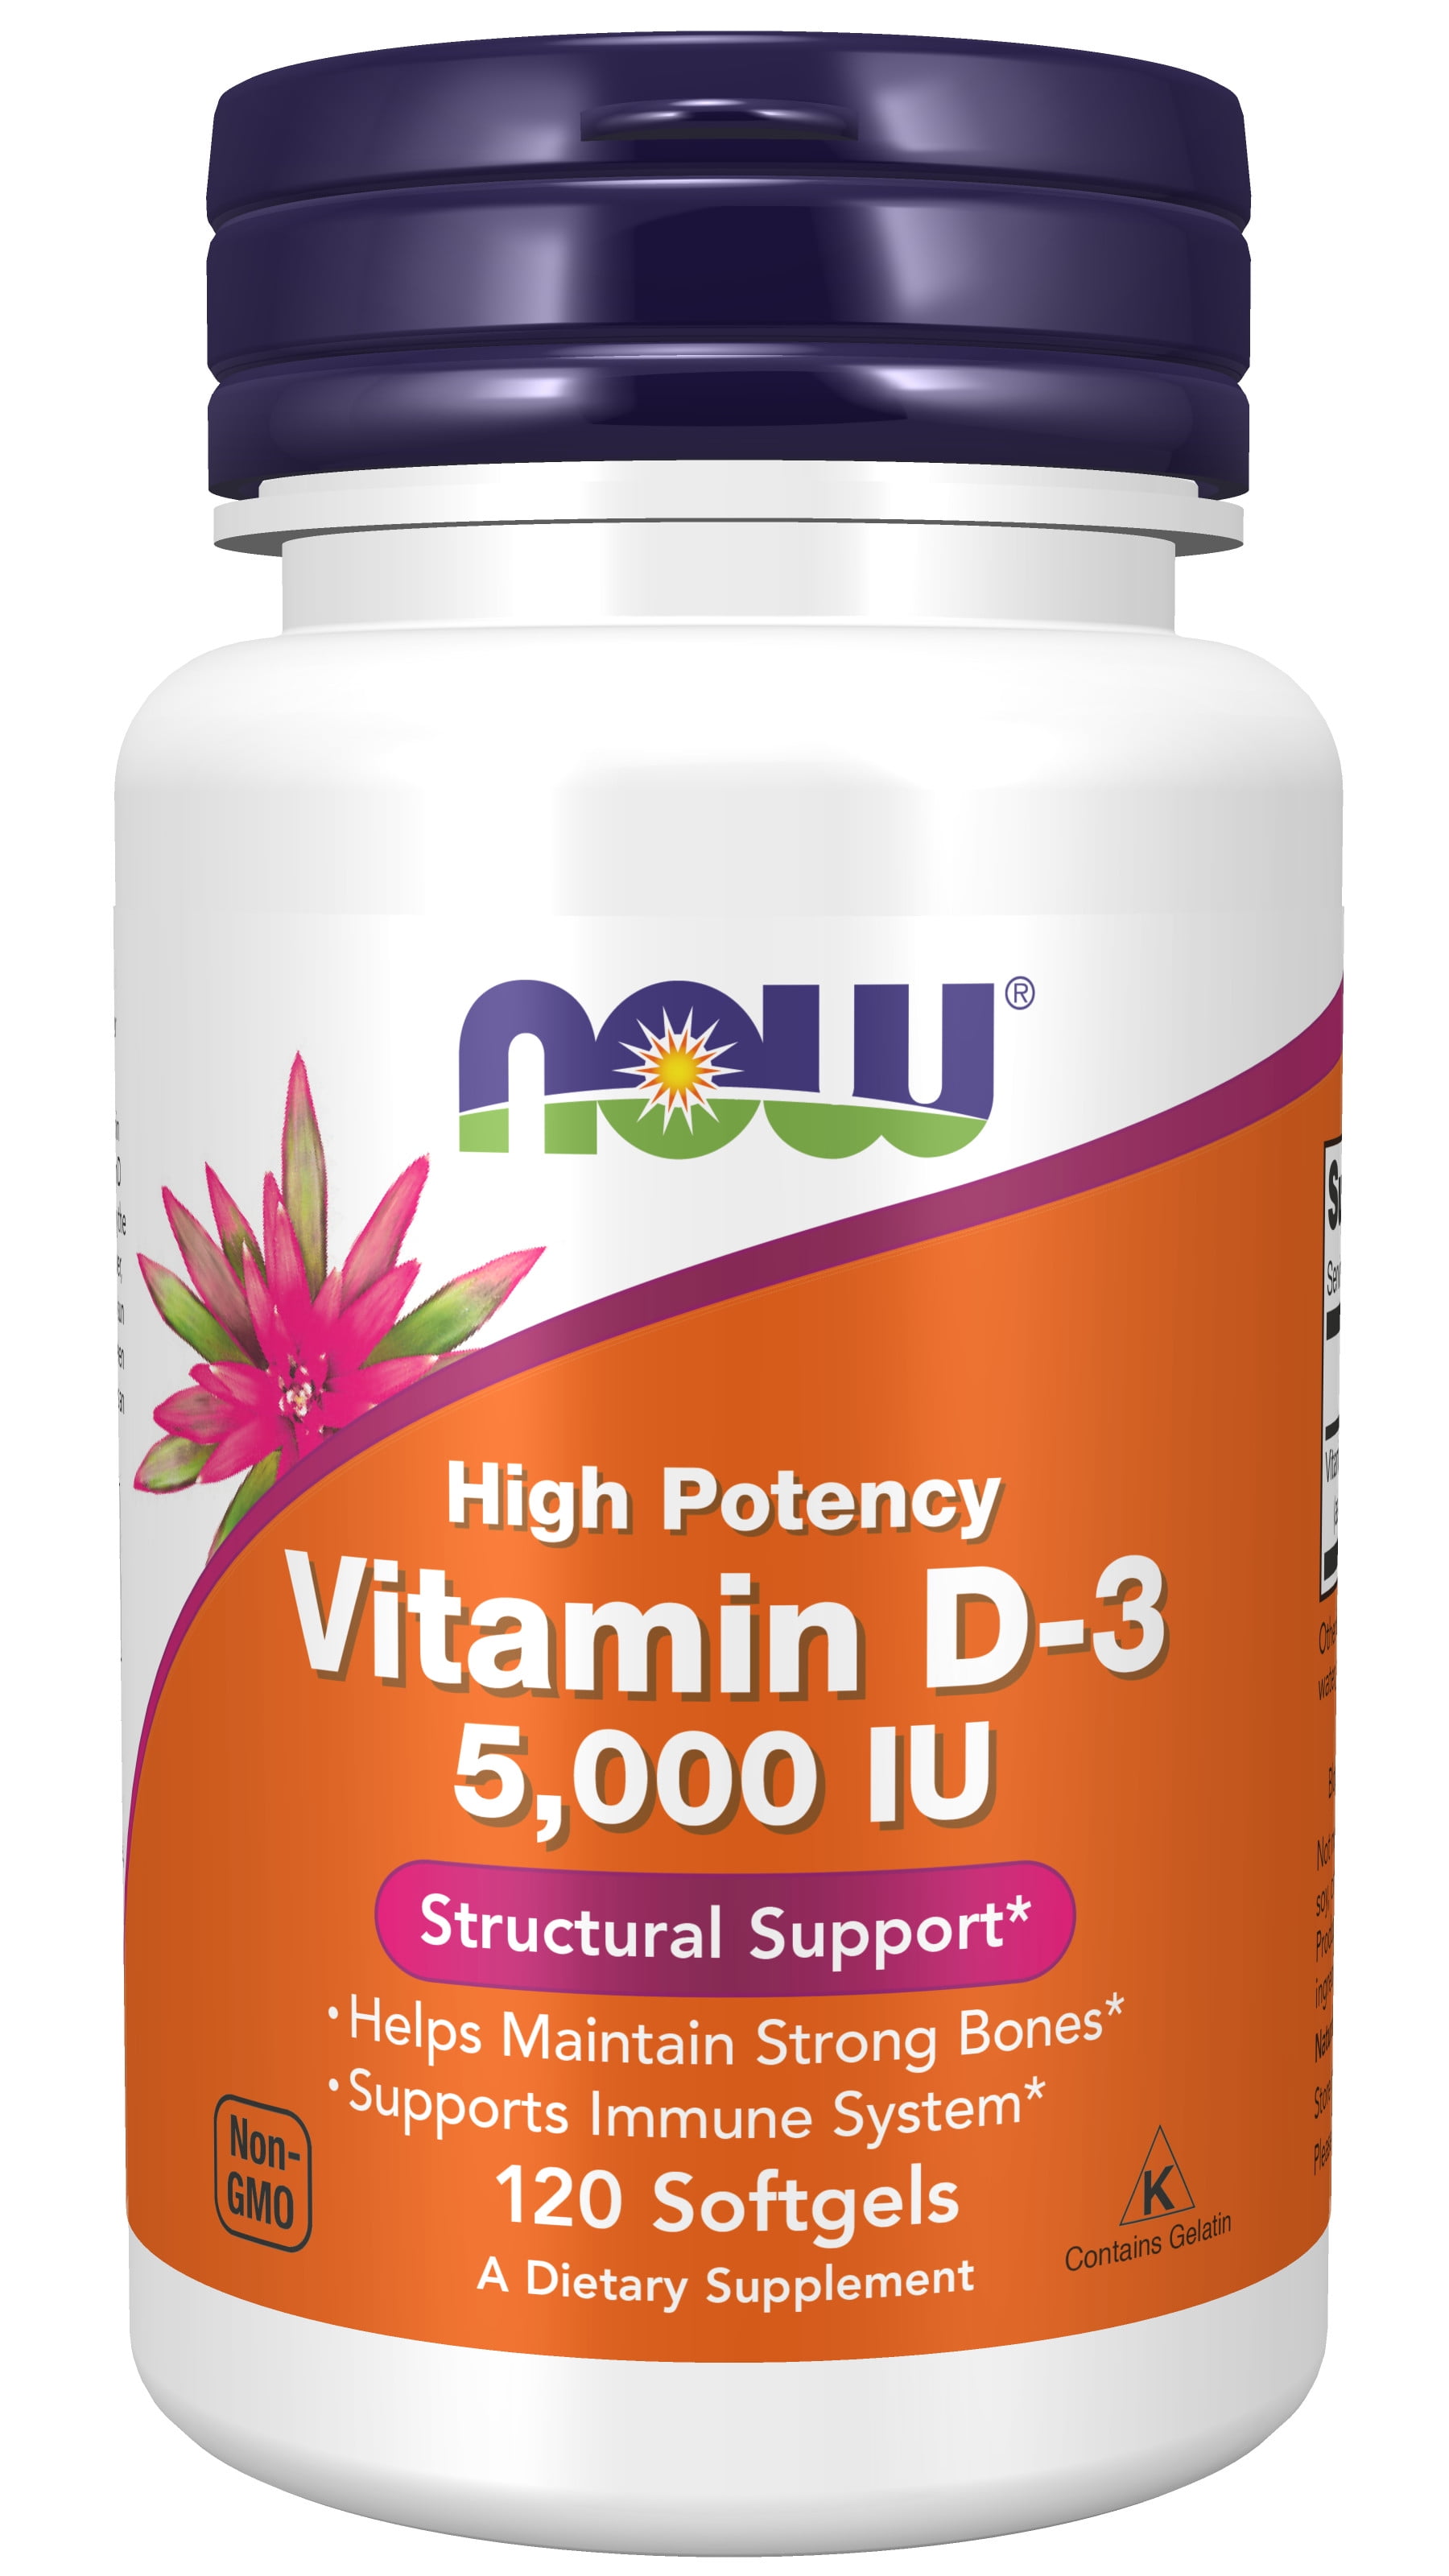 Natural Vitamin D-3 D3 HIGH POTENCY PURE VITAMIN D3 ! 5000iu x360caps 